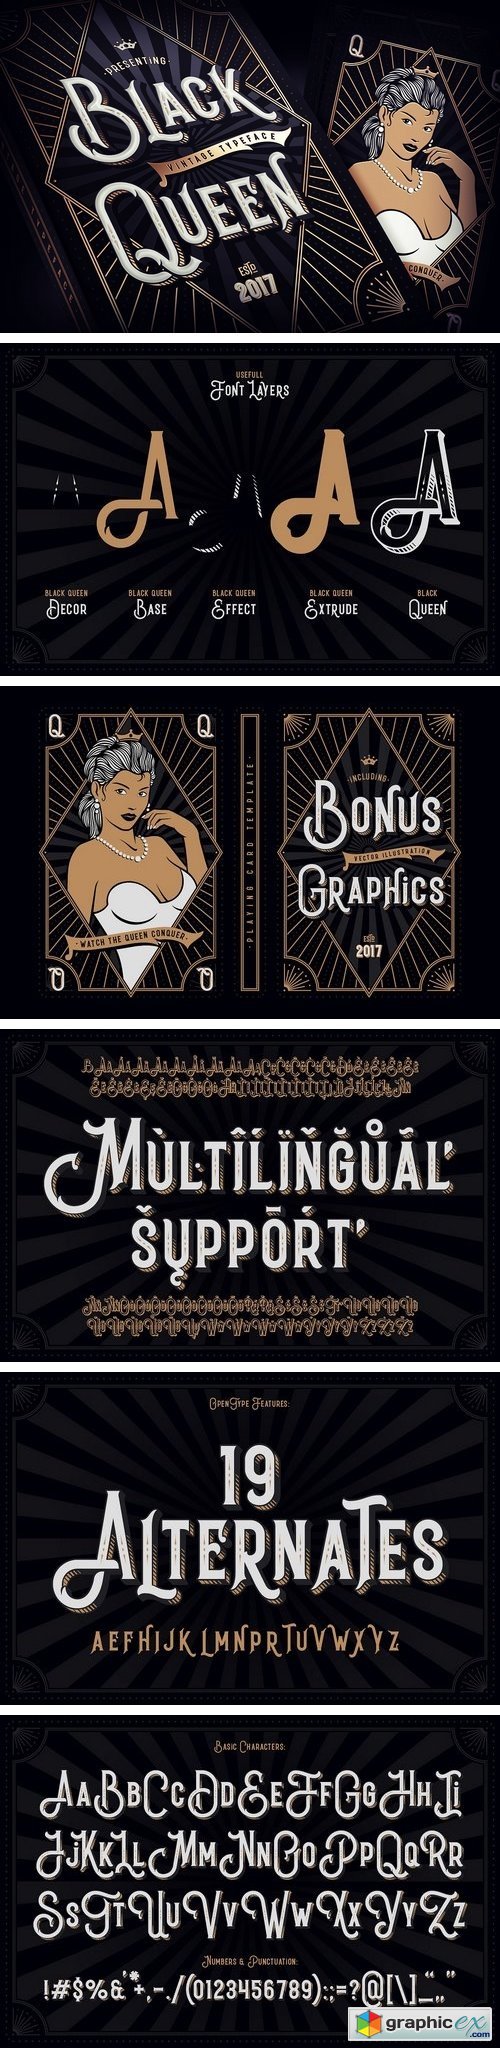 Black Queen font + bonus graphics